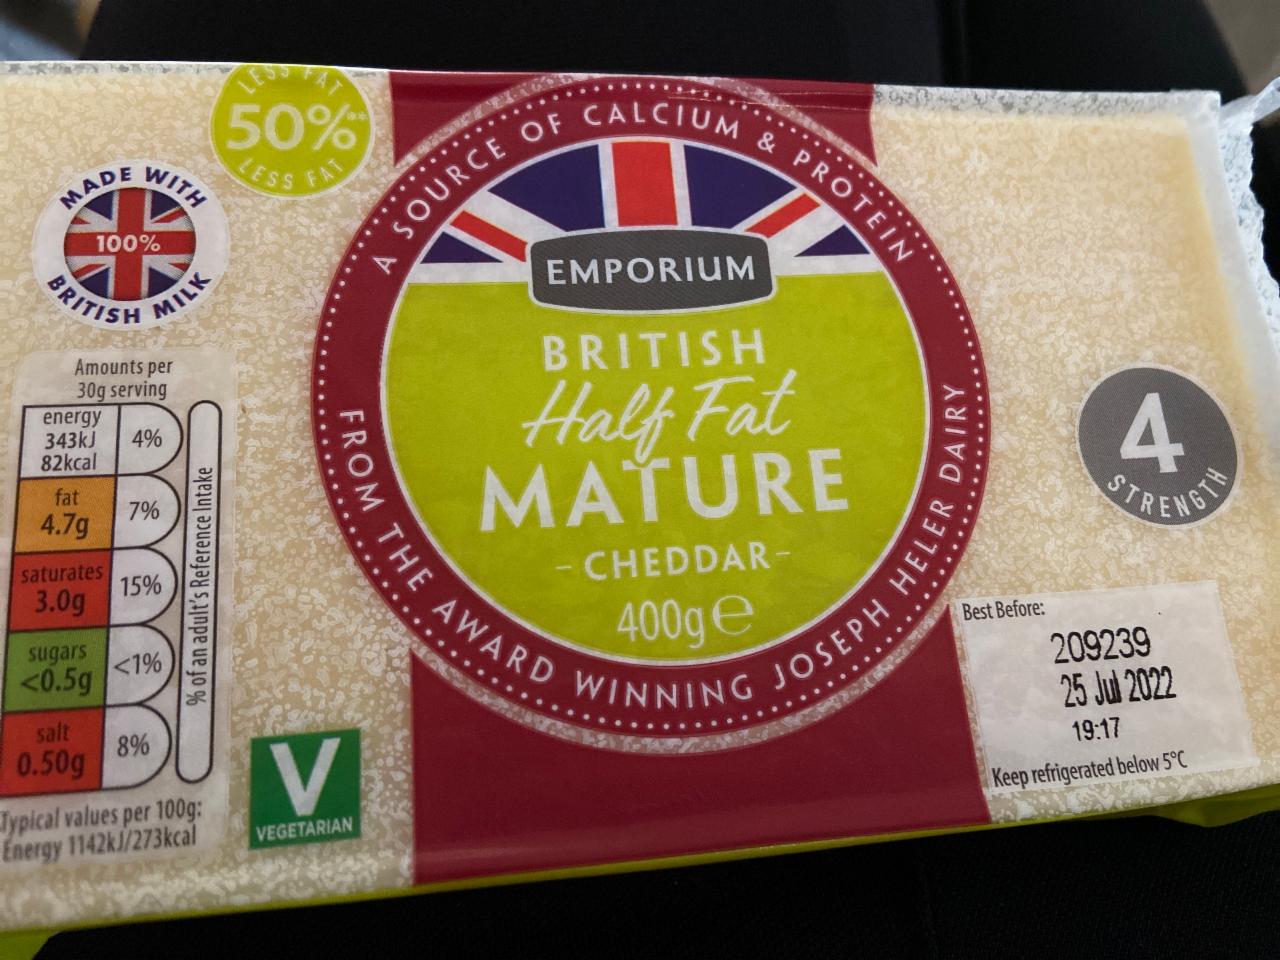 Fotografie - British Half Fat Mature Cheddar Emporium